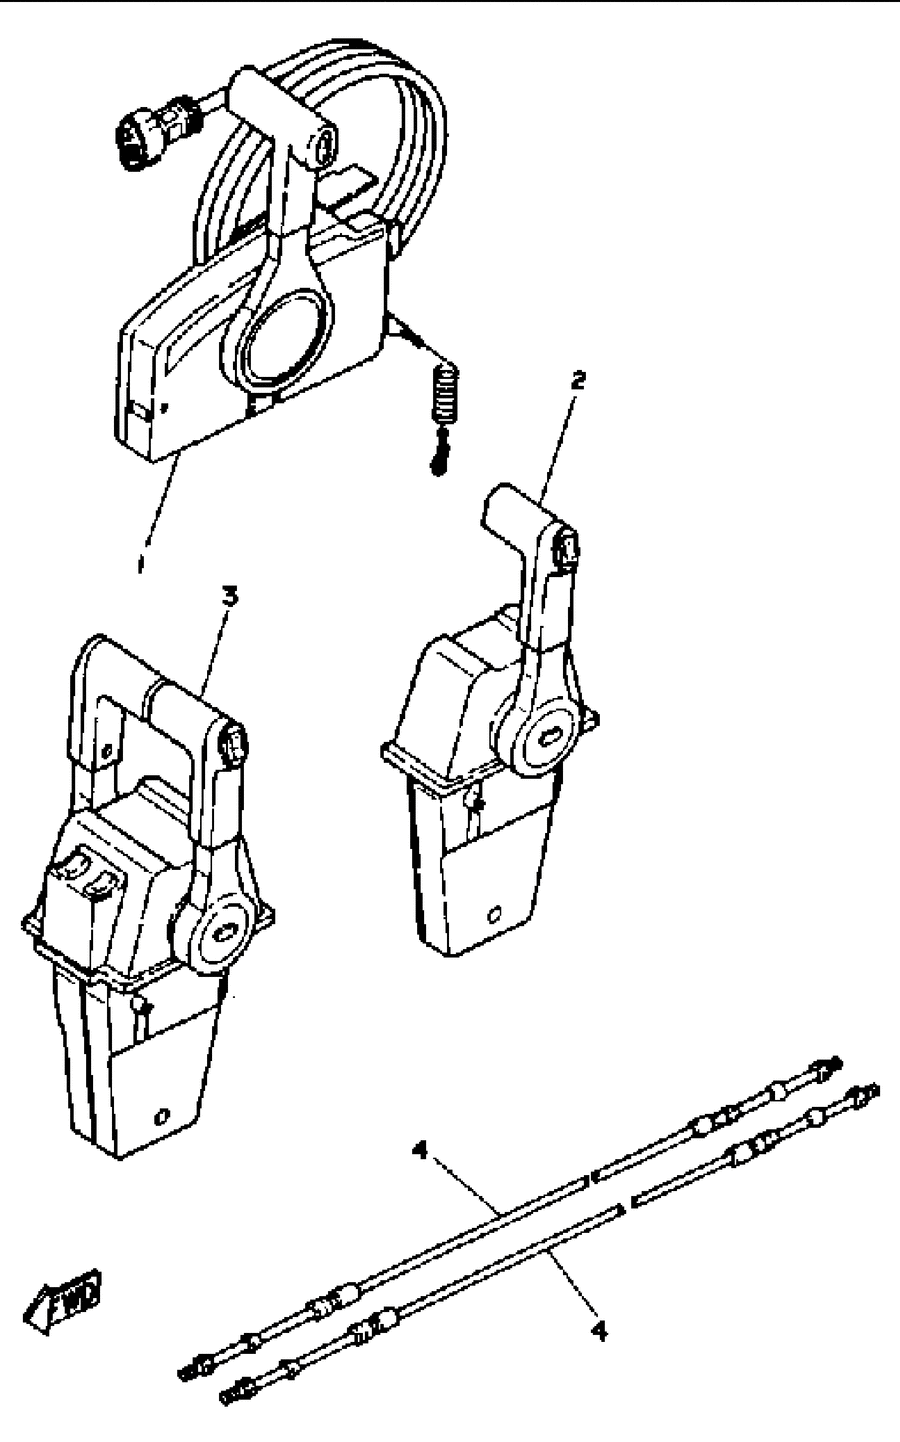 1991 L250TLRP REMOTE CONTROL CABLES